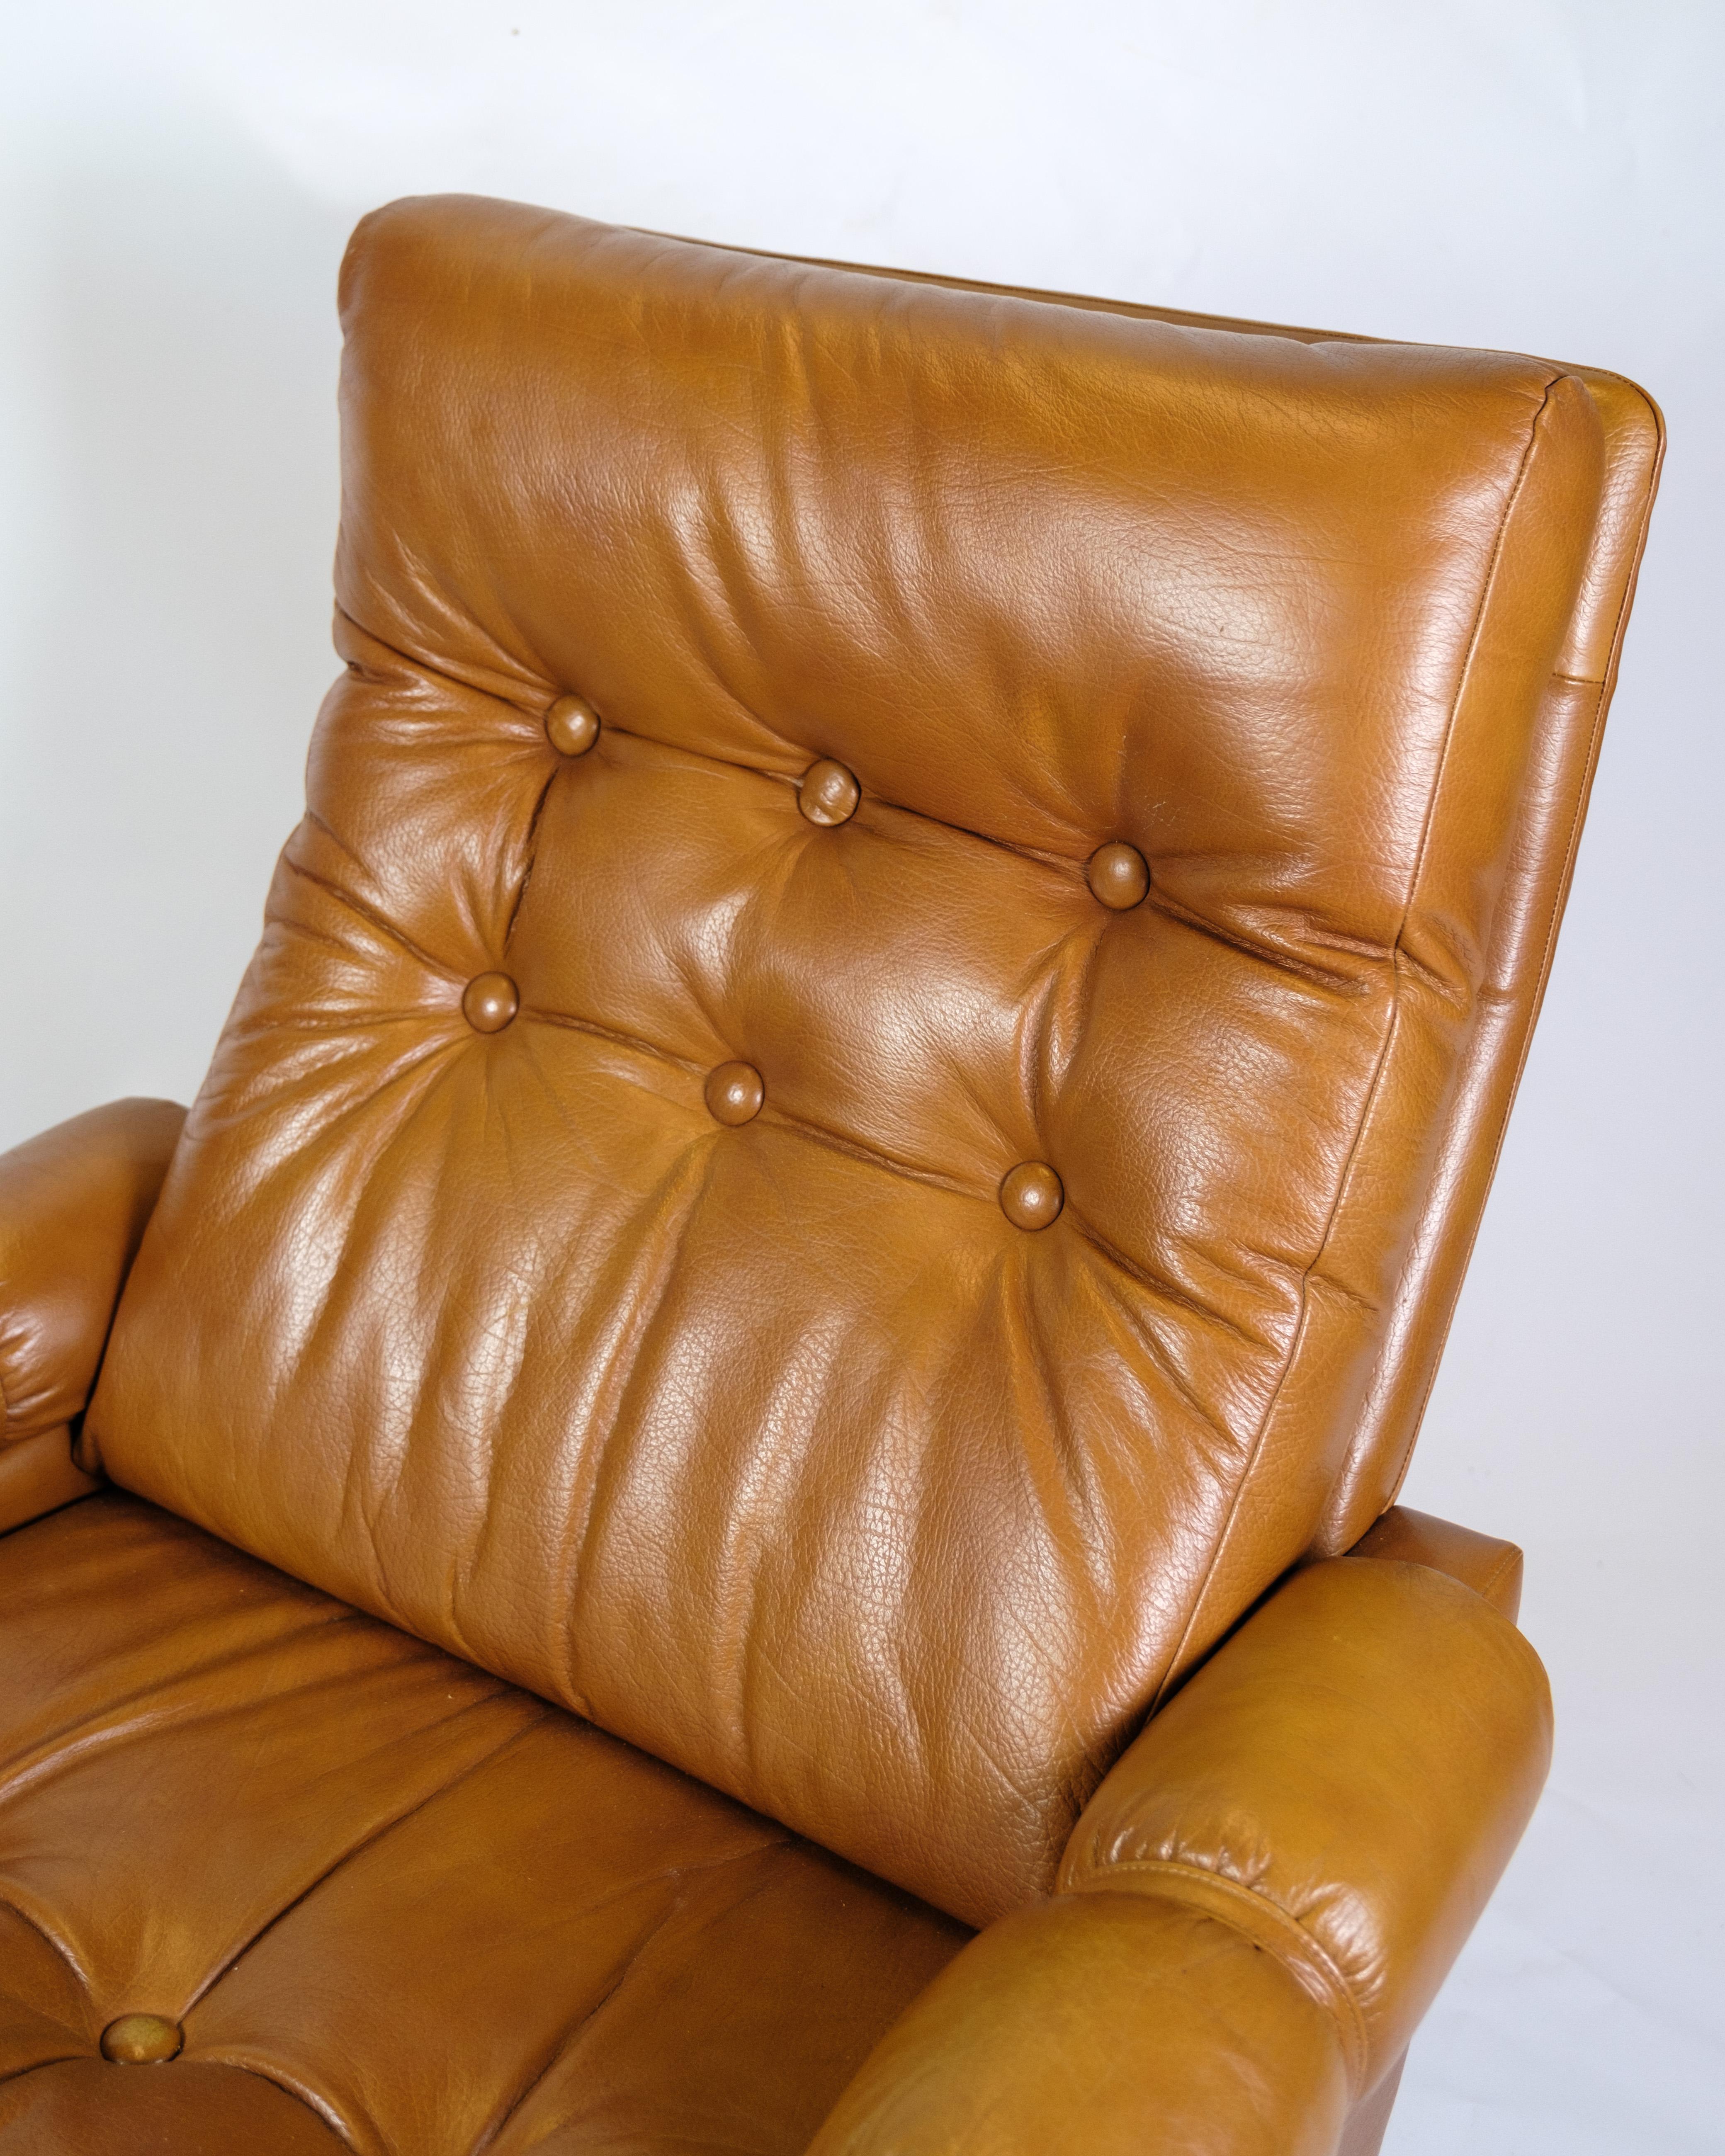 Der Sessel aus cognacfarbenem Leder, ein Beispiel für dänisches Design aus den 1980er Jahren, strahlt sowohl Komfort als auch Stil aus. Die warme, satte Farbe des cognacfarbenen Leders verleiht dem Stuhl einen edlen Look, während das weiche Leder